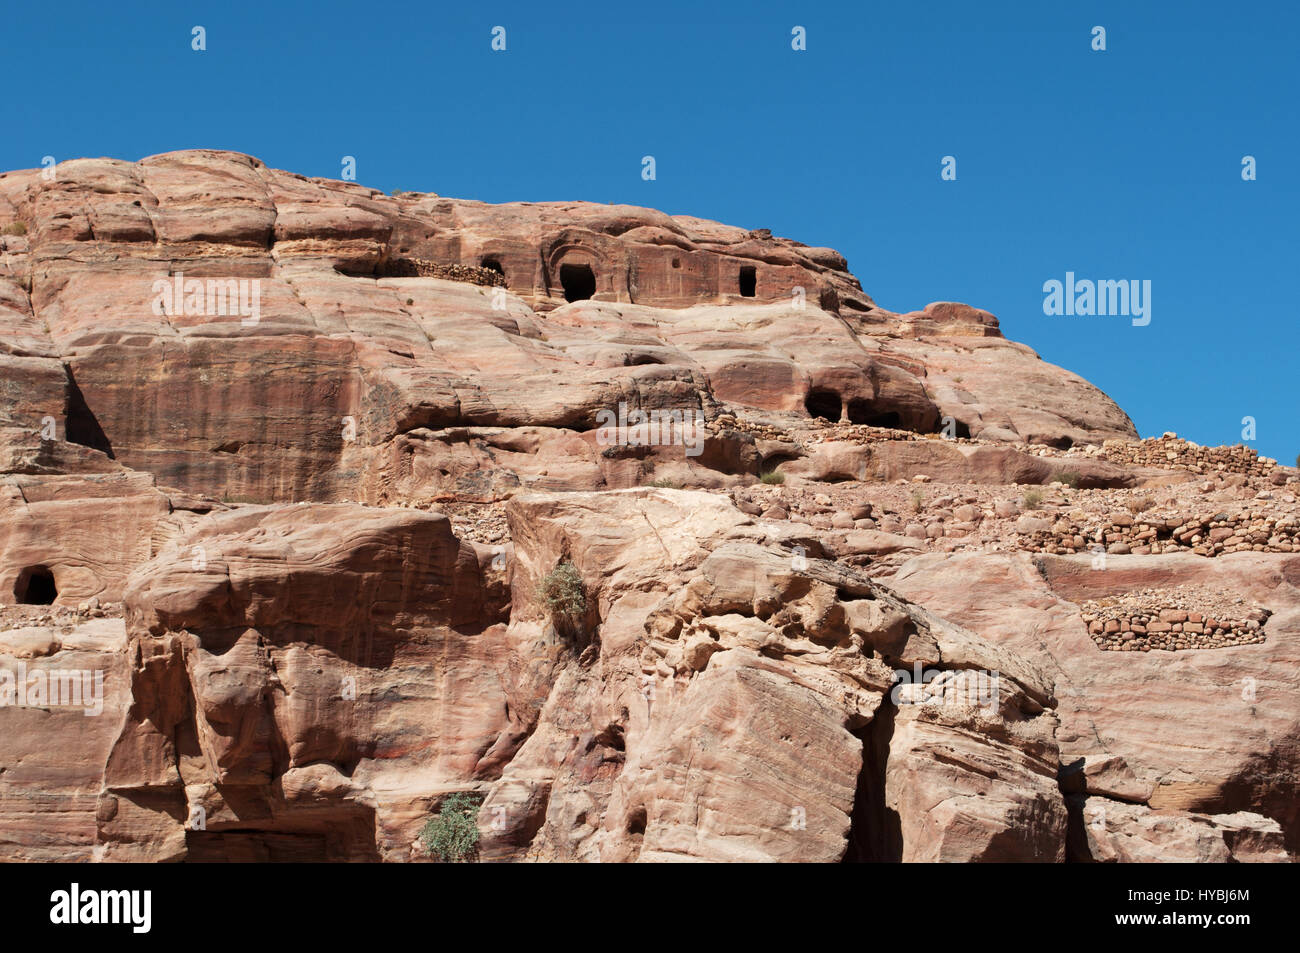 Jordanien: Gebäude und verschiedene Formen, Farben und Schattierungen auf die roten Felsen gesehen zu Fuß in die Schlucht des archäologischen Nabatäer Tal von Petra Stockfoto